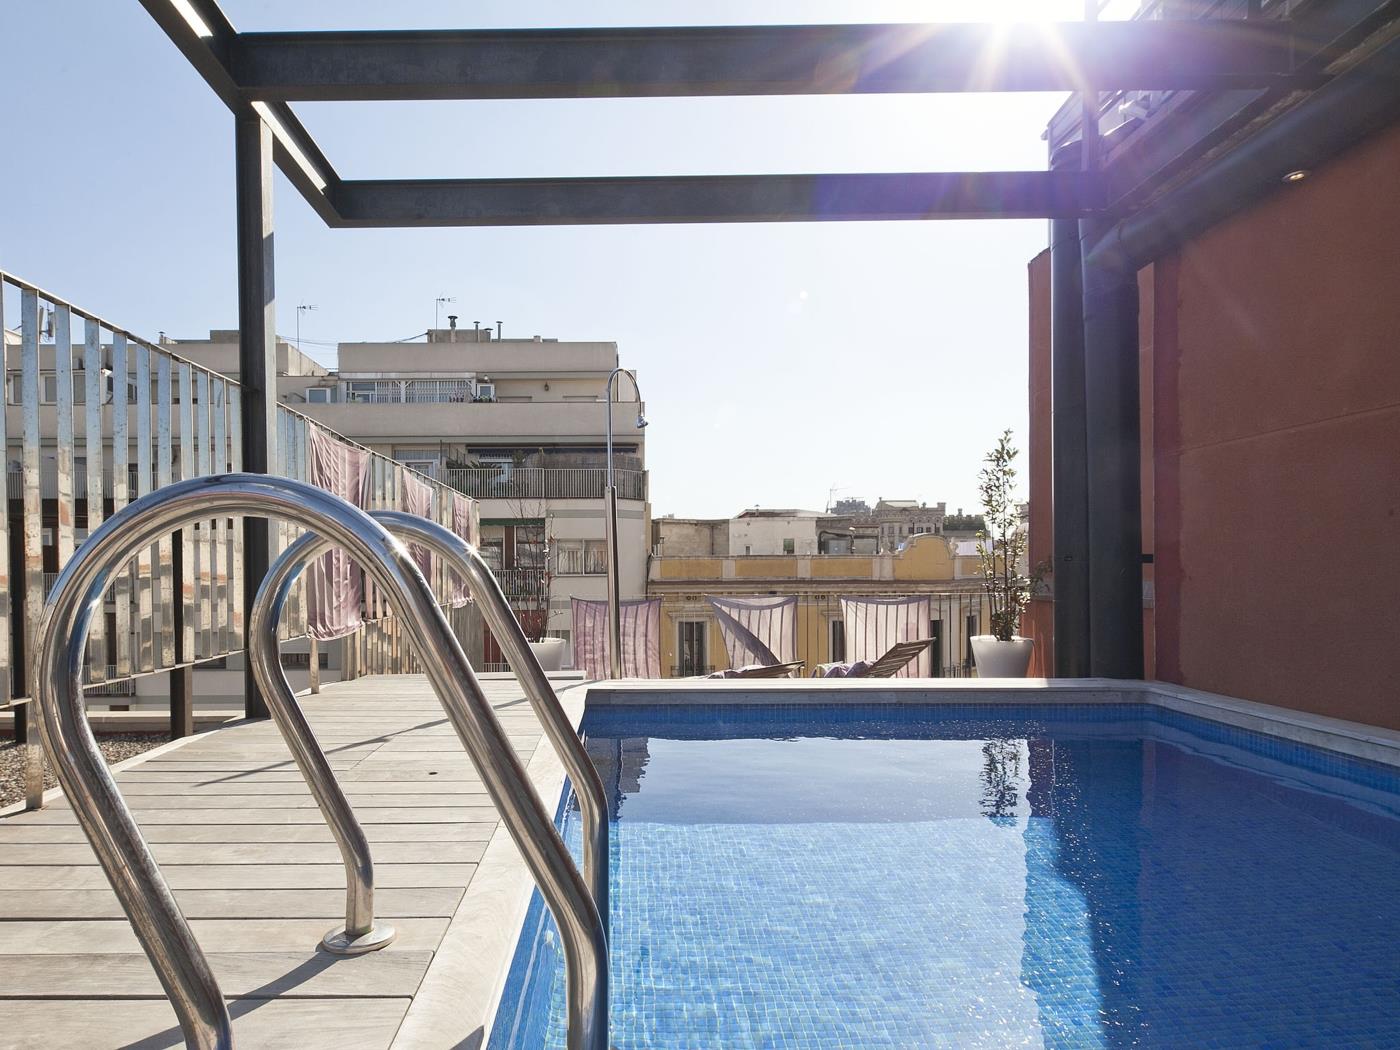 Appartamento al centro di Barcellona con piscina - My Space Barcelona Appartamenti